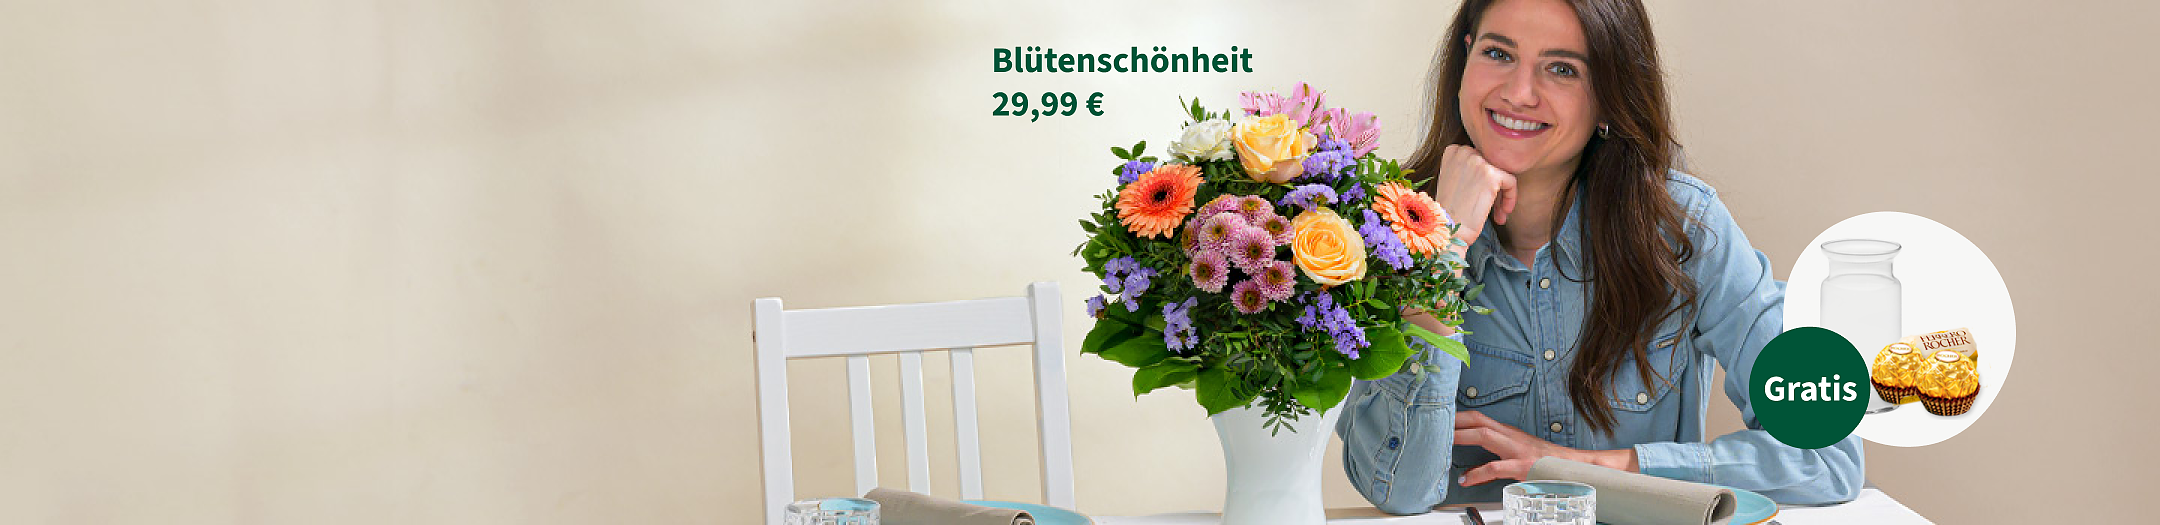 Blumenstrauß Blütenschönheit für 29,99 €